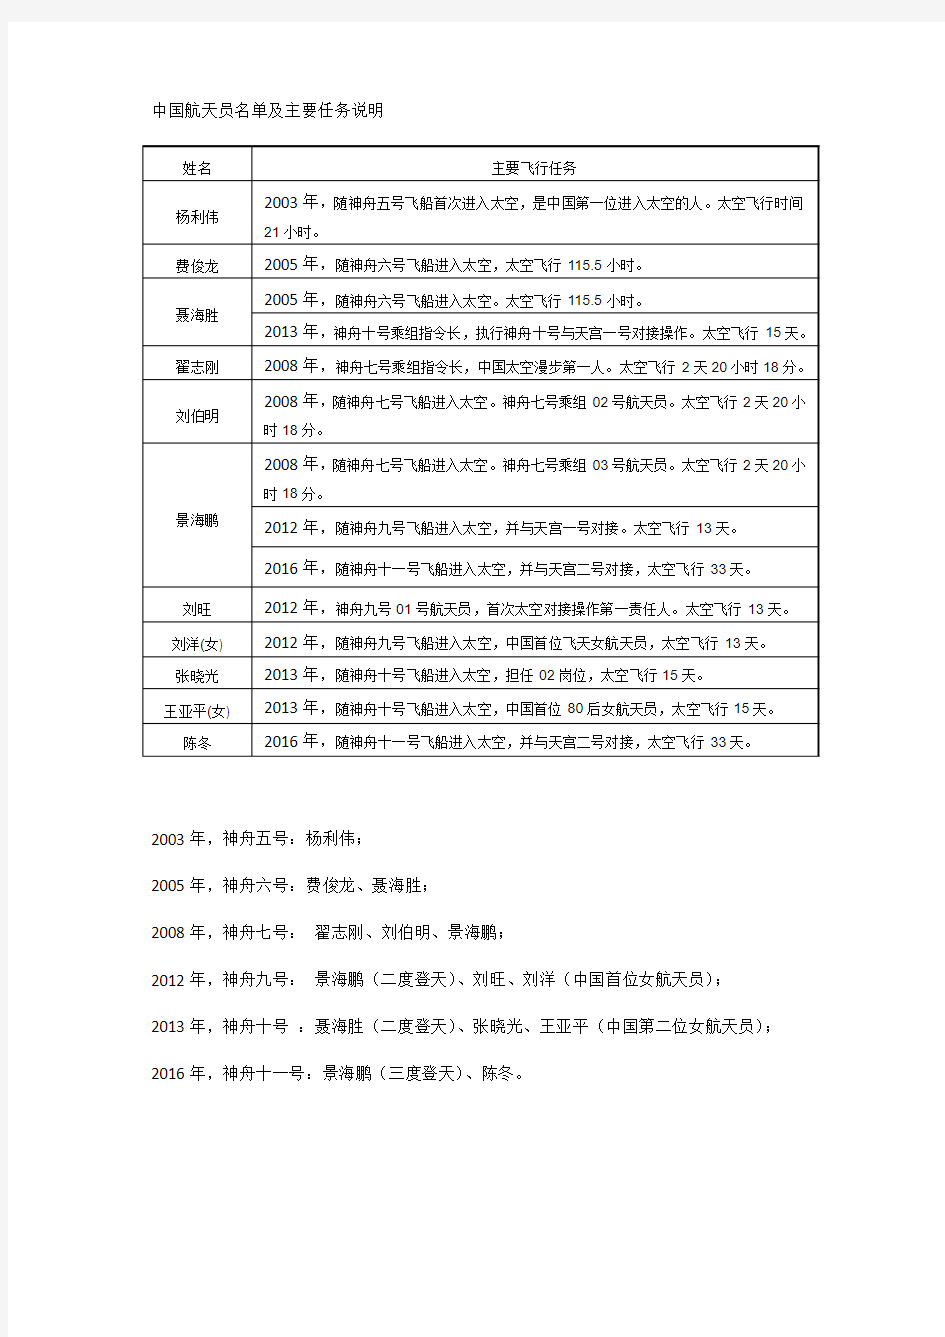 中国航天员名单及主要任务说明